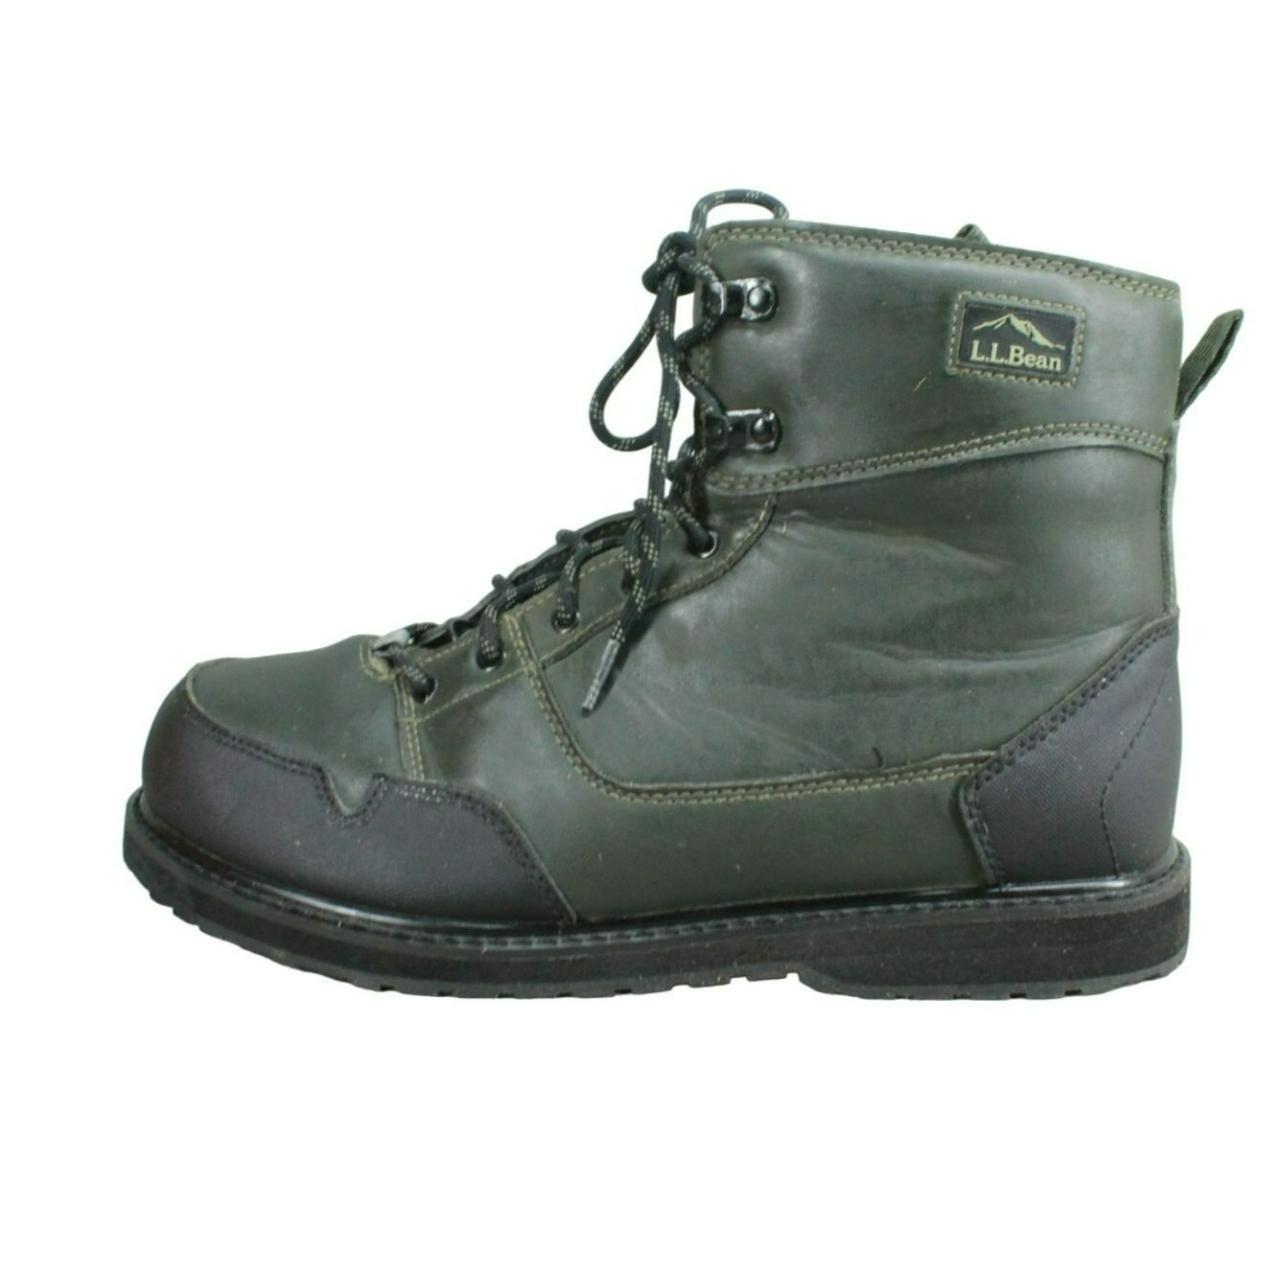 L.L.Bean Men's Ankle Boots - Green - US 11